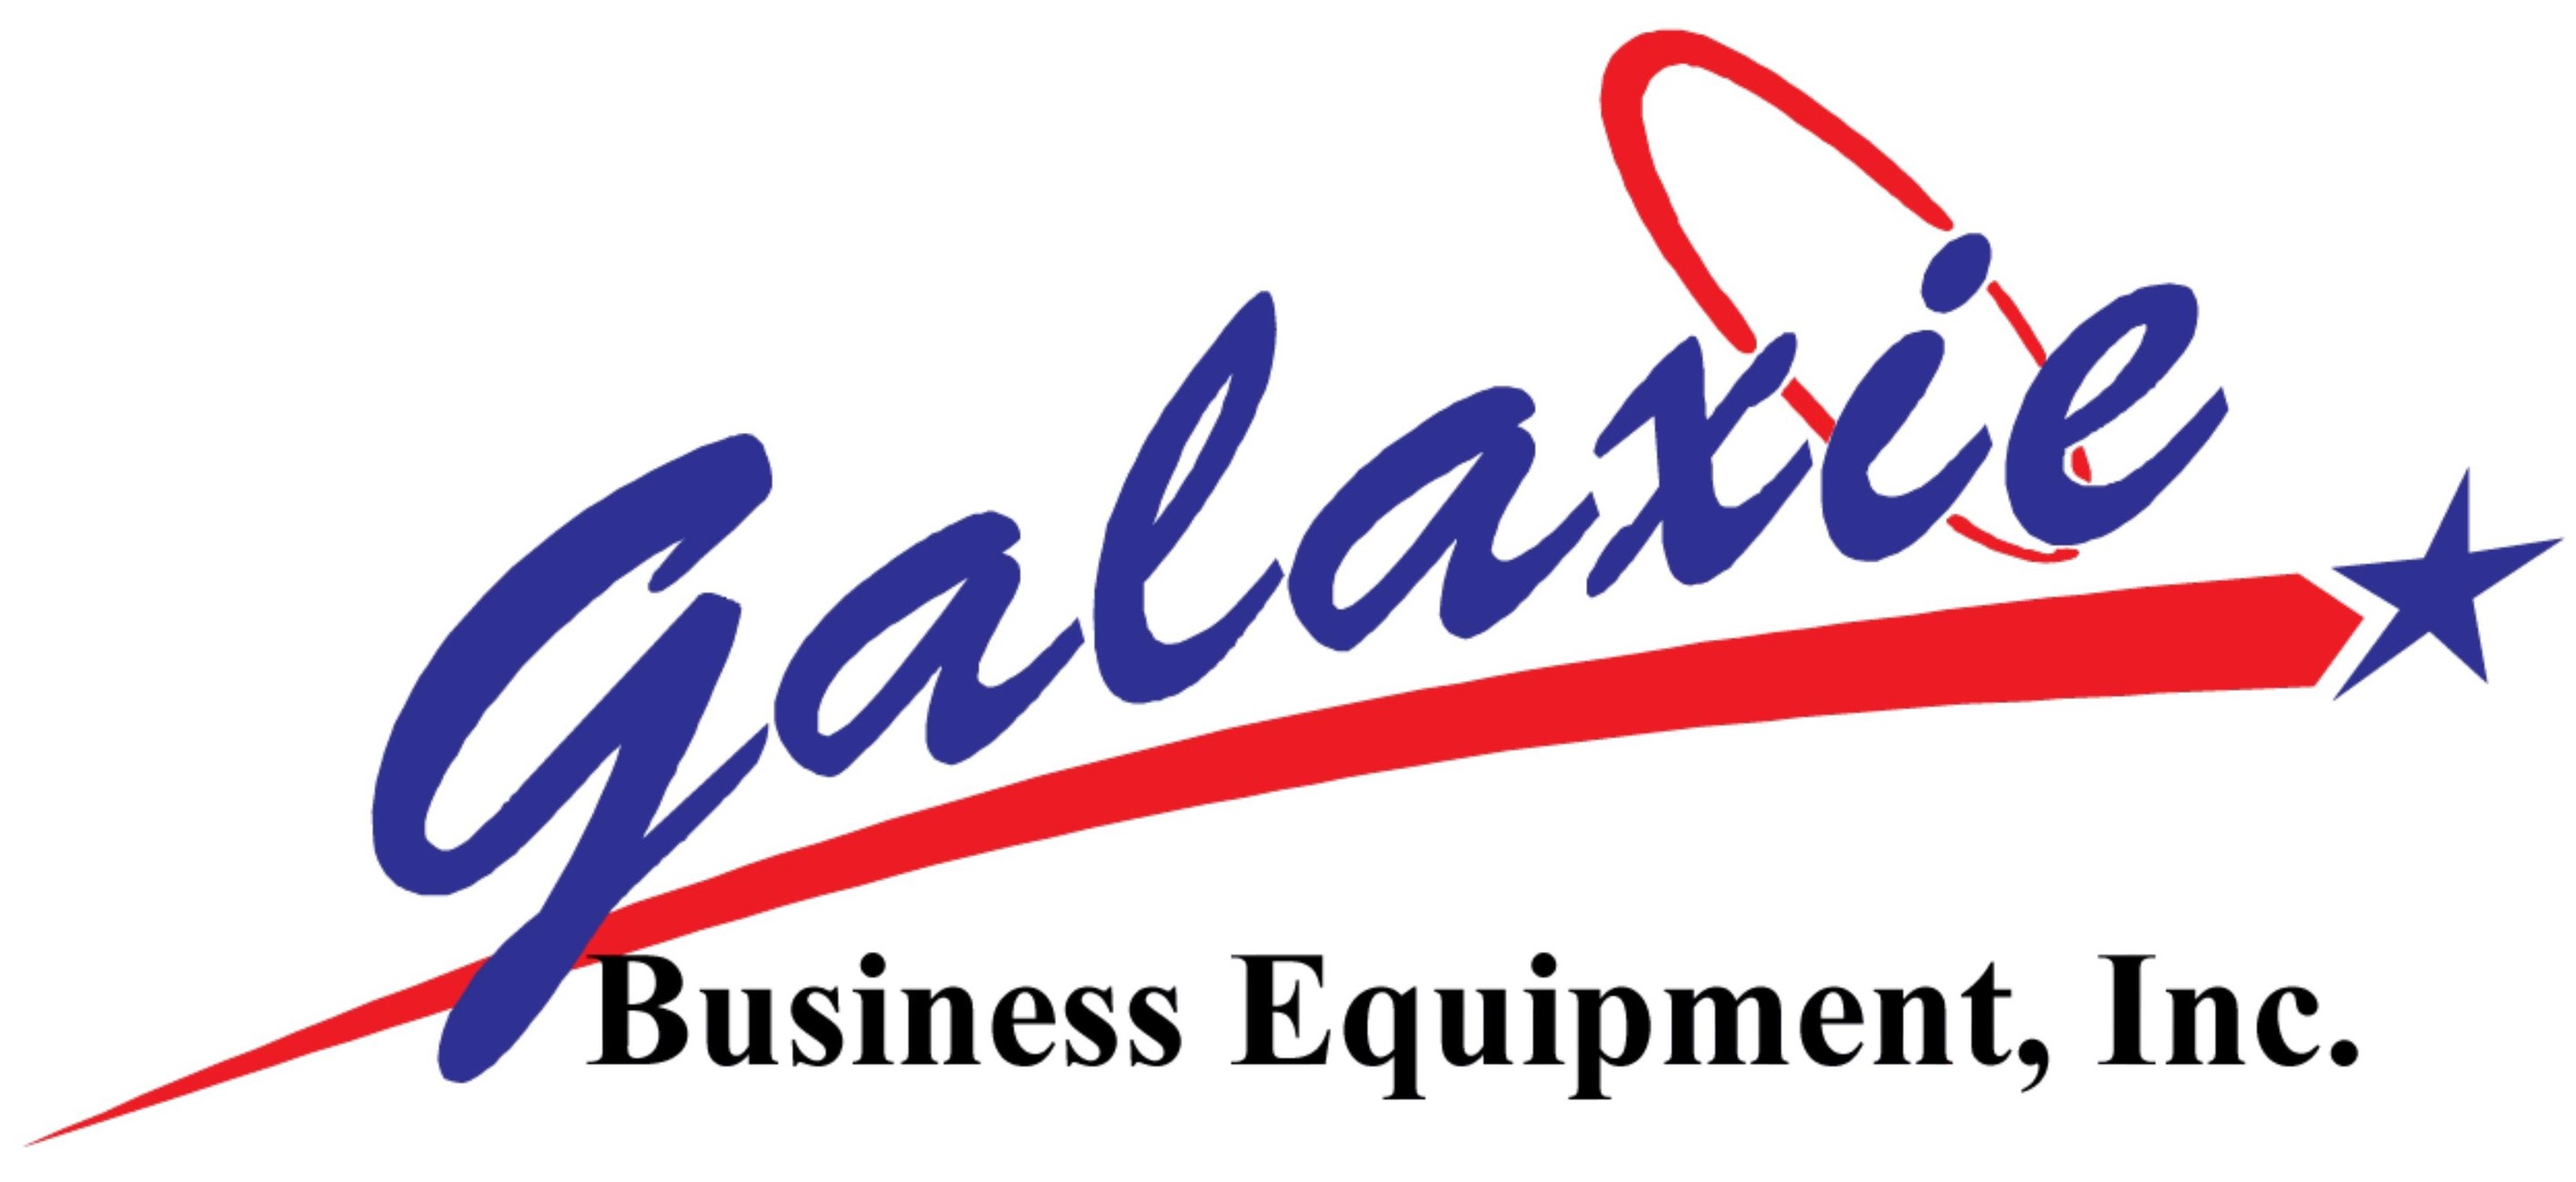 galaxie business equipment